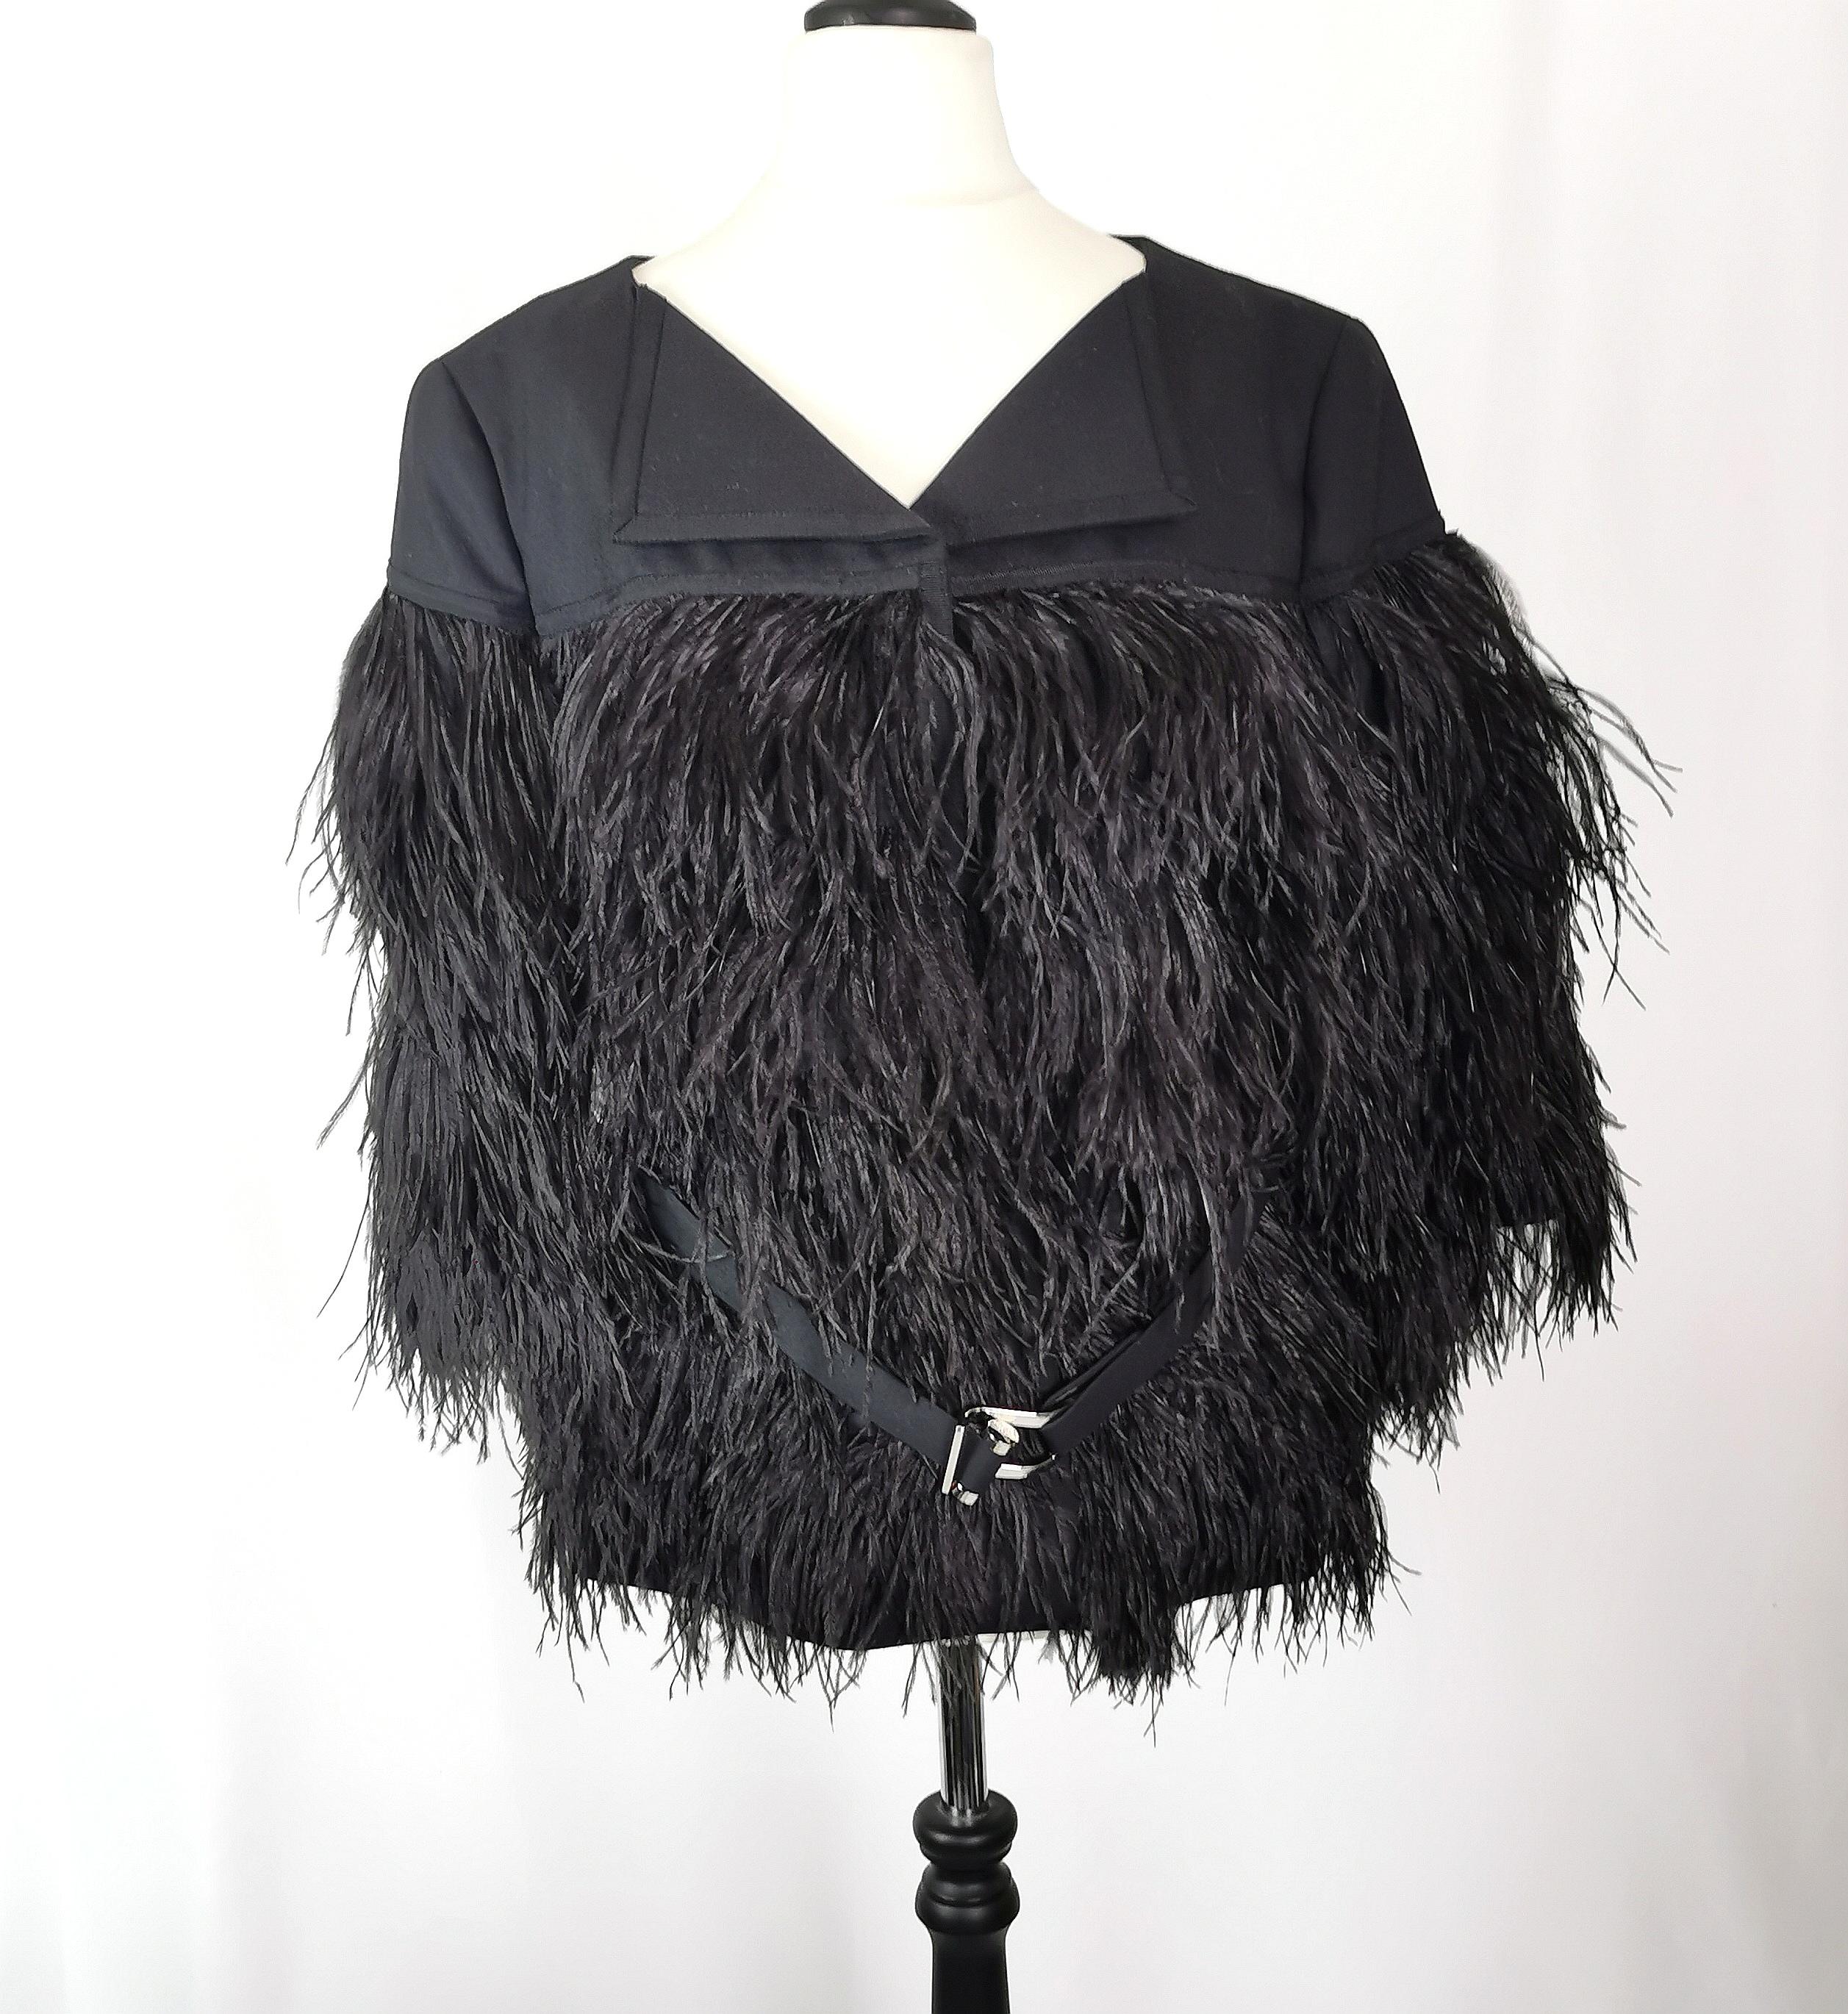 Superbe veste Escada noire en plumes d'autruche pour femme.

La veste, de forme carrée, est fabriquée à partir d'un tissu mixte noir, uni sur la partie supérieure, les épaules et le cou, et recouverte de plumes d'autruche noires très douces jusqu'en